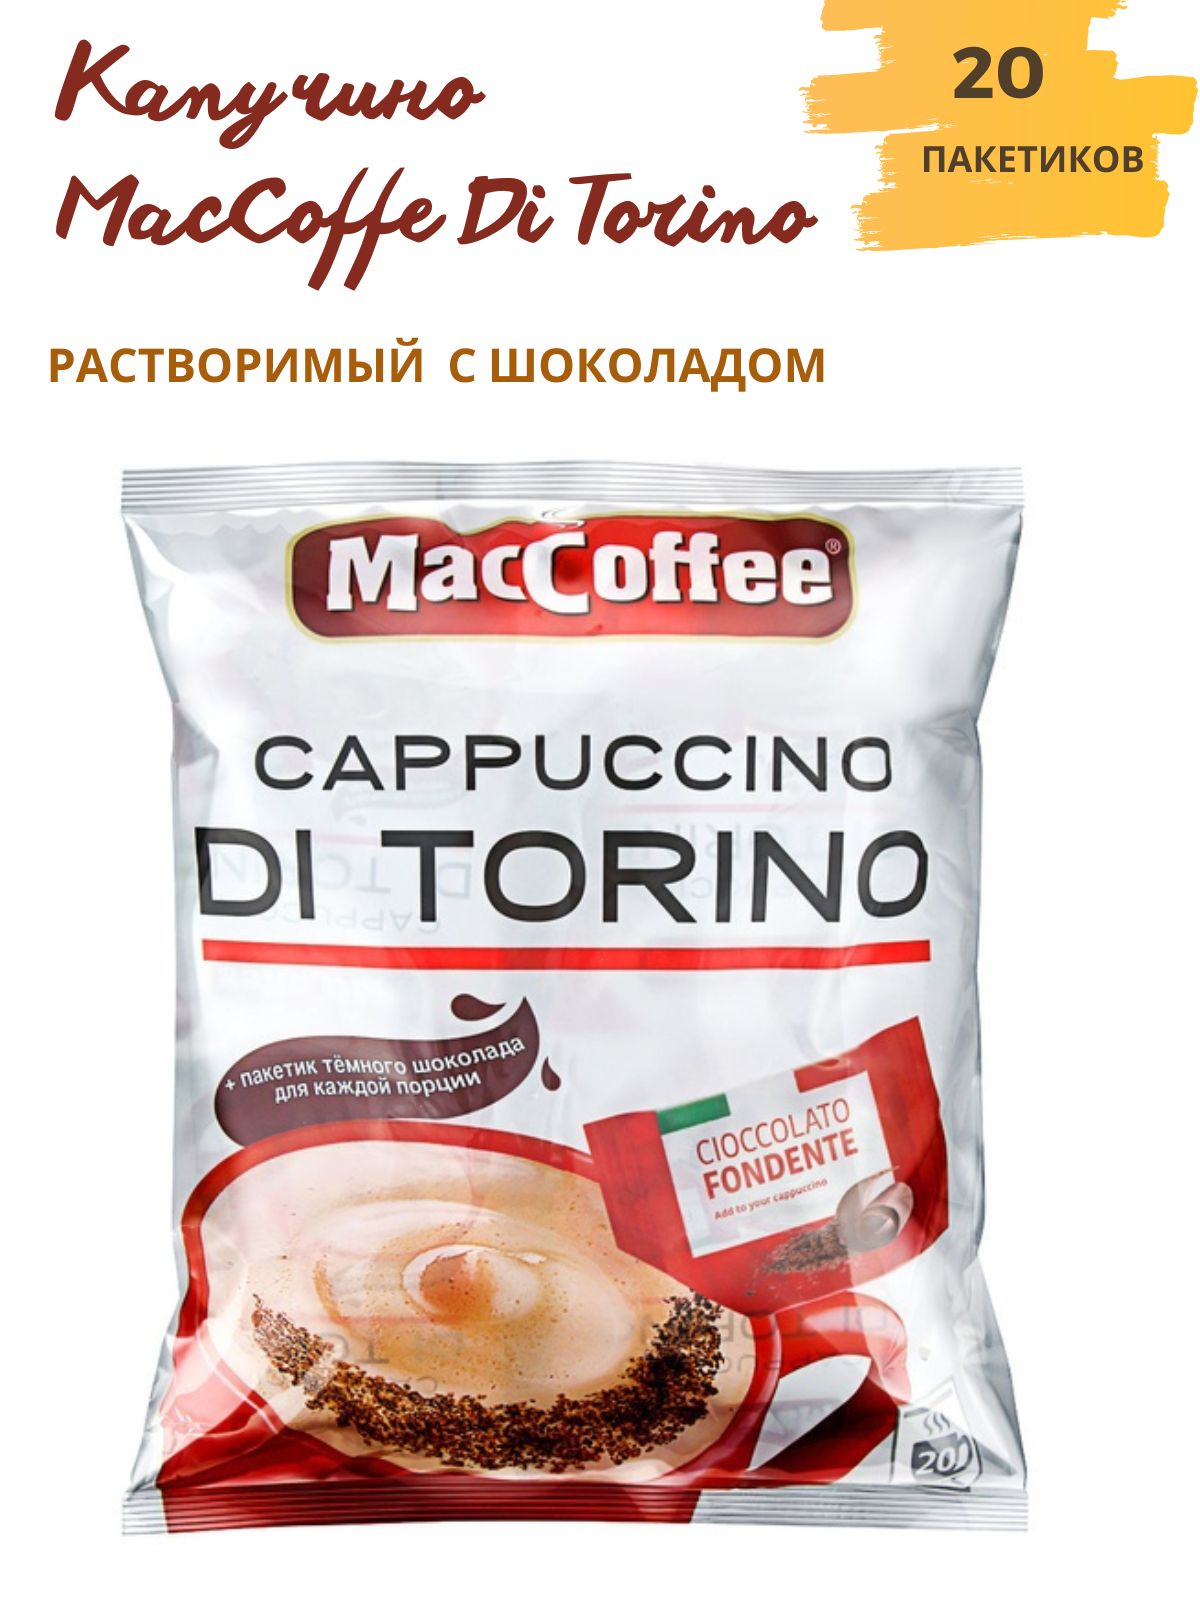 Маккофе торино. Маккофе 3 в 1 капучино. Кофе MACCOFFEE Cappuccino di Torino. Напиток кофейный MACCOFFEE Cappuccino di Torino 3в1. Маккофе 3 в 1 капучино di Torino.